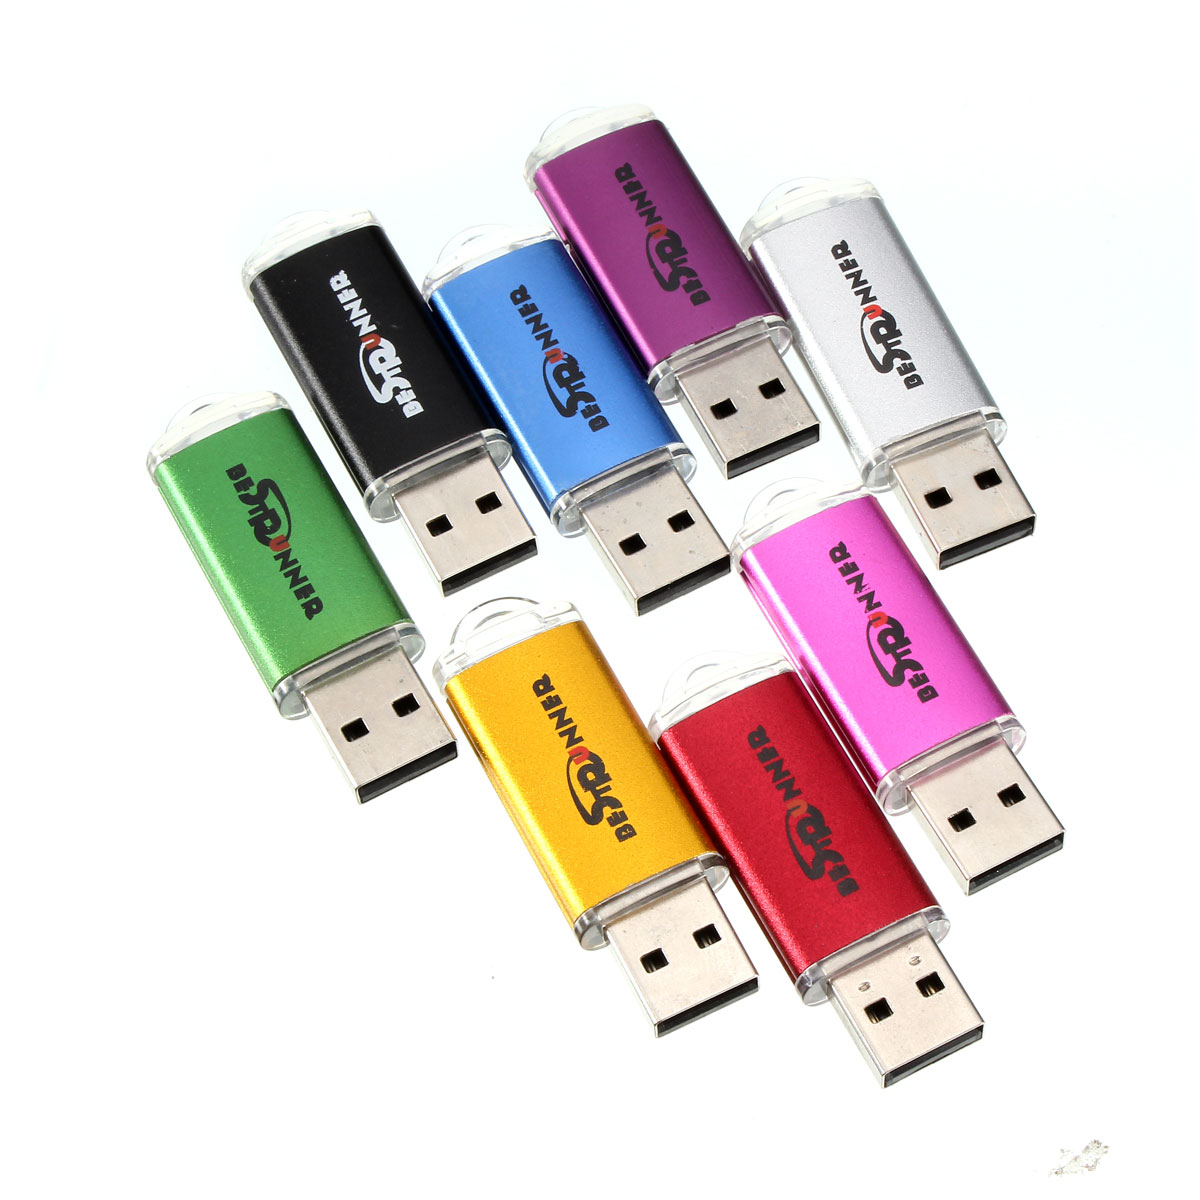 

Bestrunner 32GB USB 2.0 Flash Дисковод Конфеты Цветная память U Диск